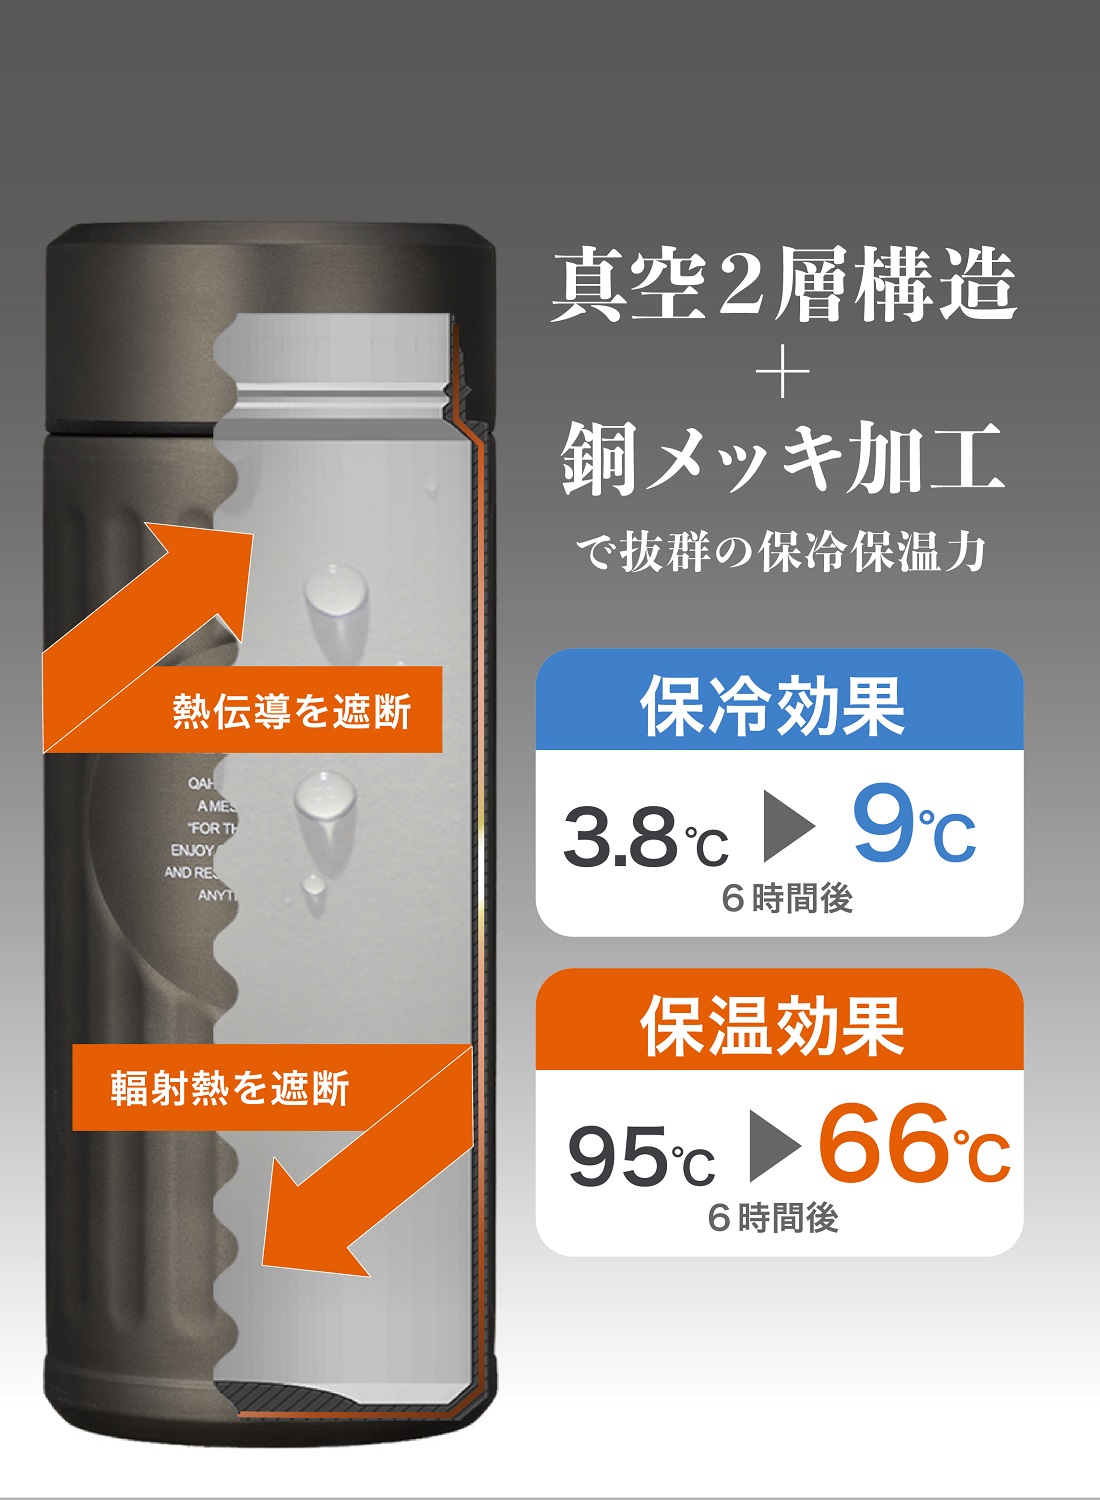 CB JAPAN QAHWA 抗菌 コーヒーボトル 420mL グラファイトグレー 水筒 カフア シービージャパン